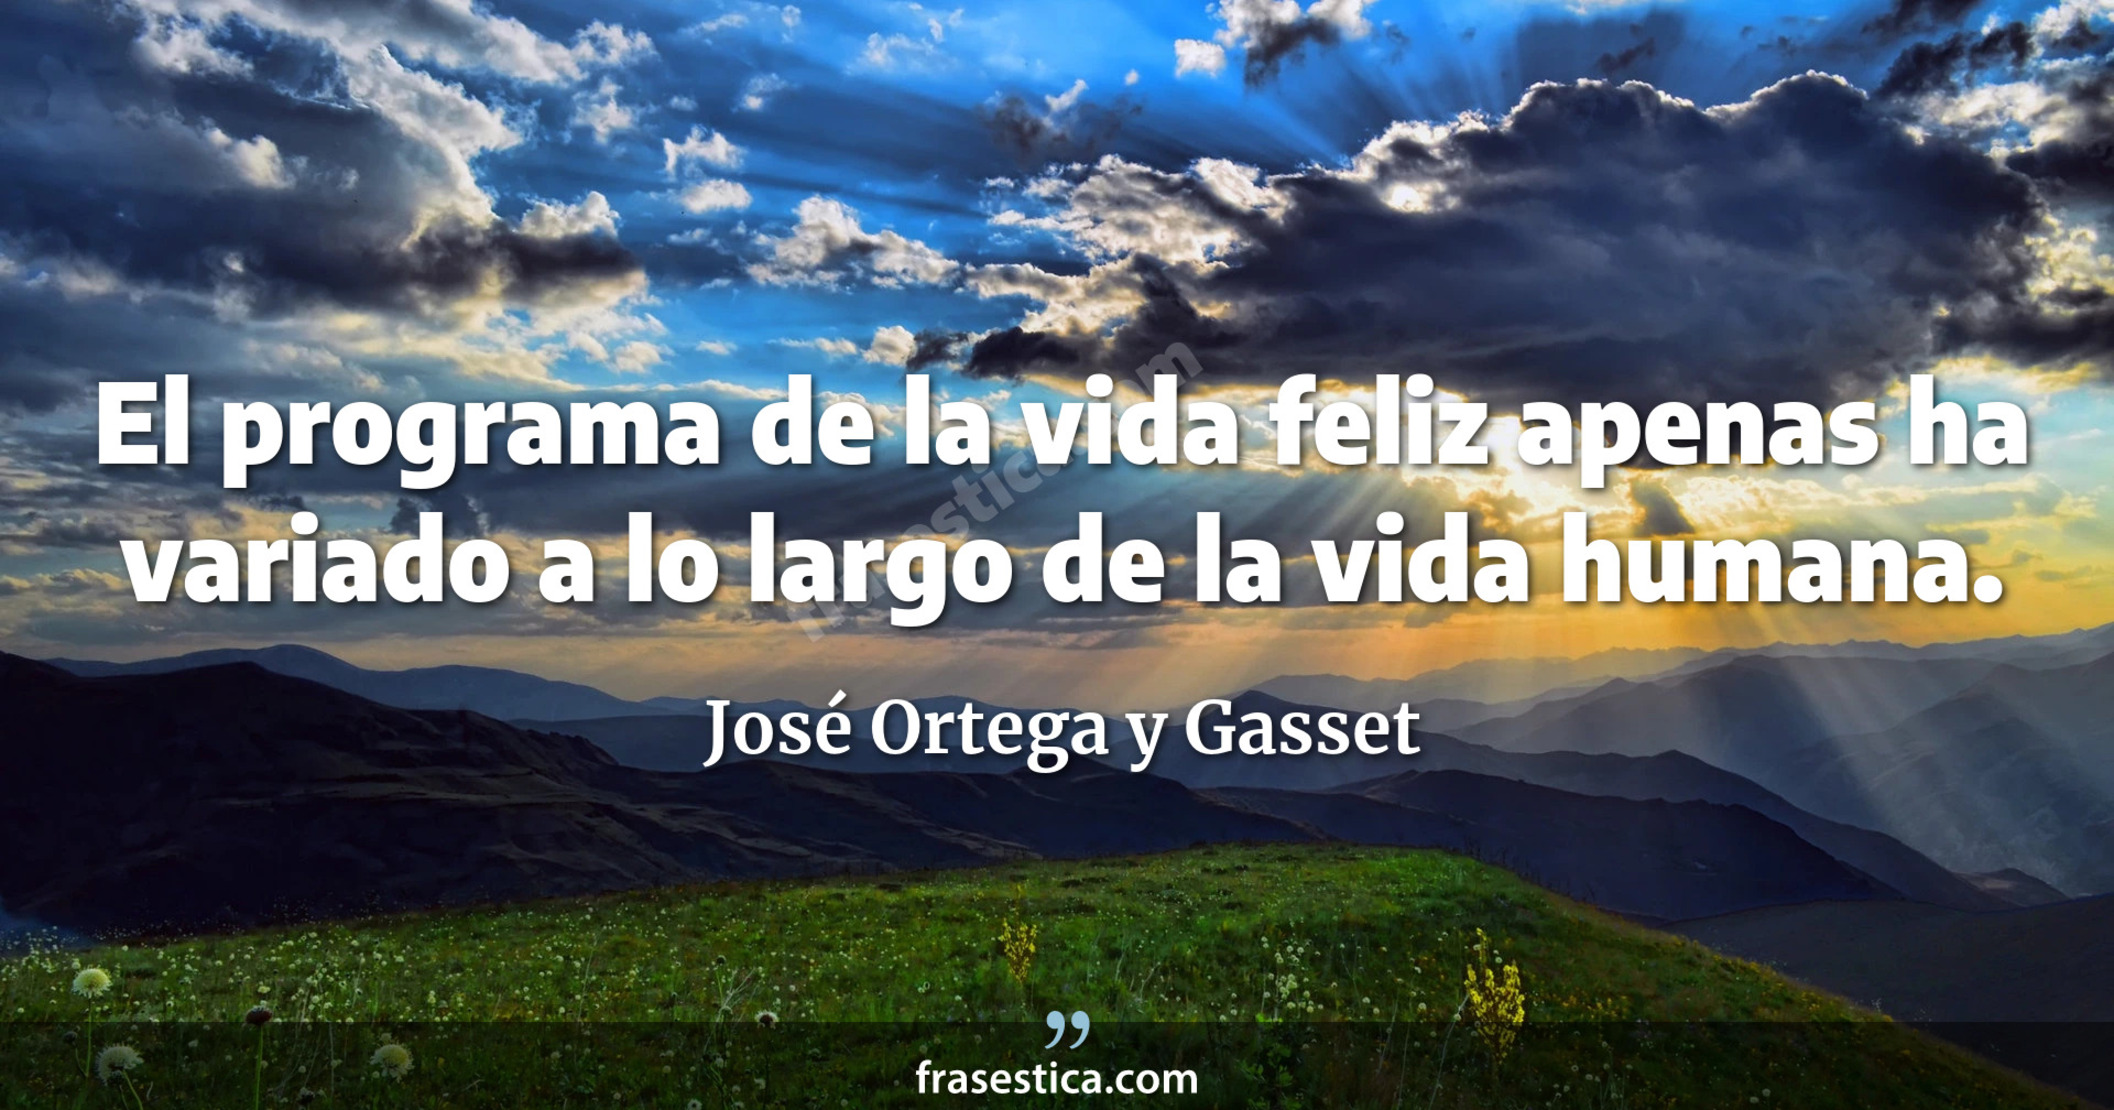 El programa de la vida feliz apenas ha variado a lo largo de la vida humana. - José Ortega y Gasset